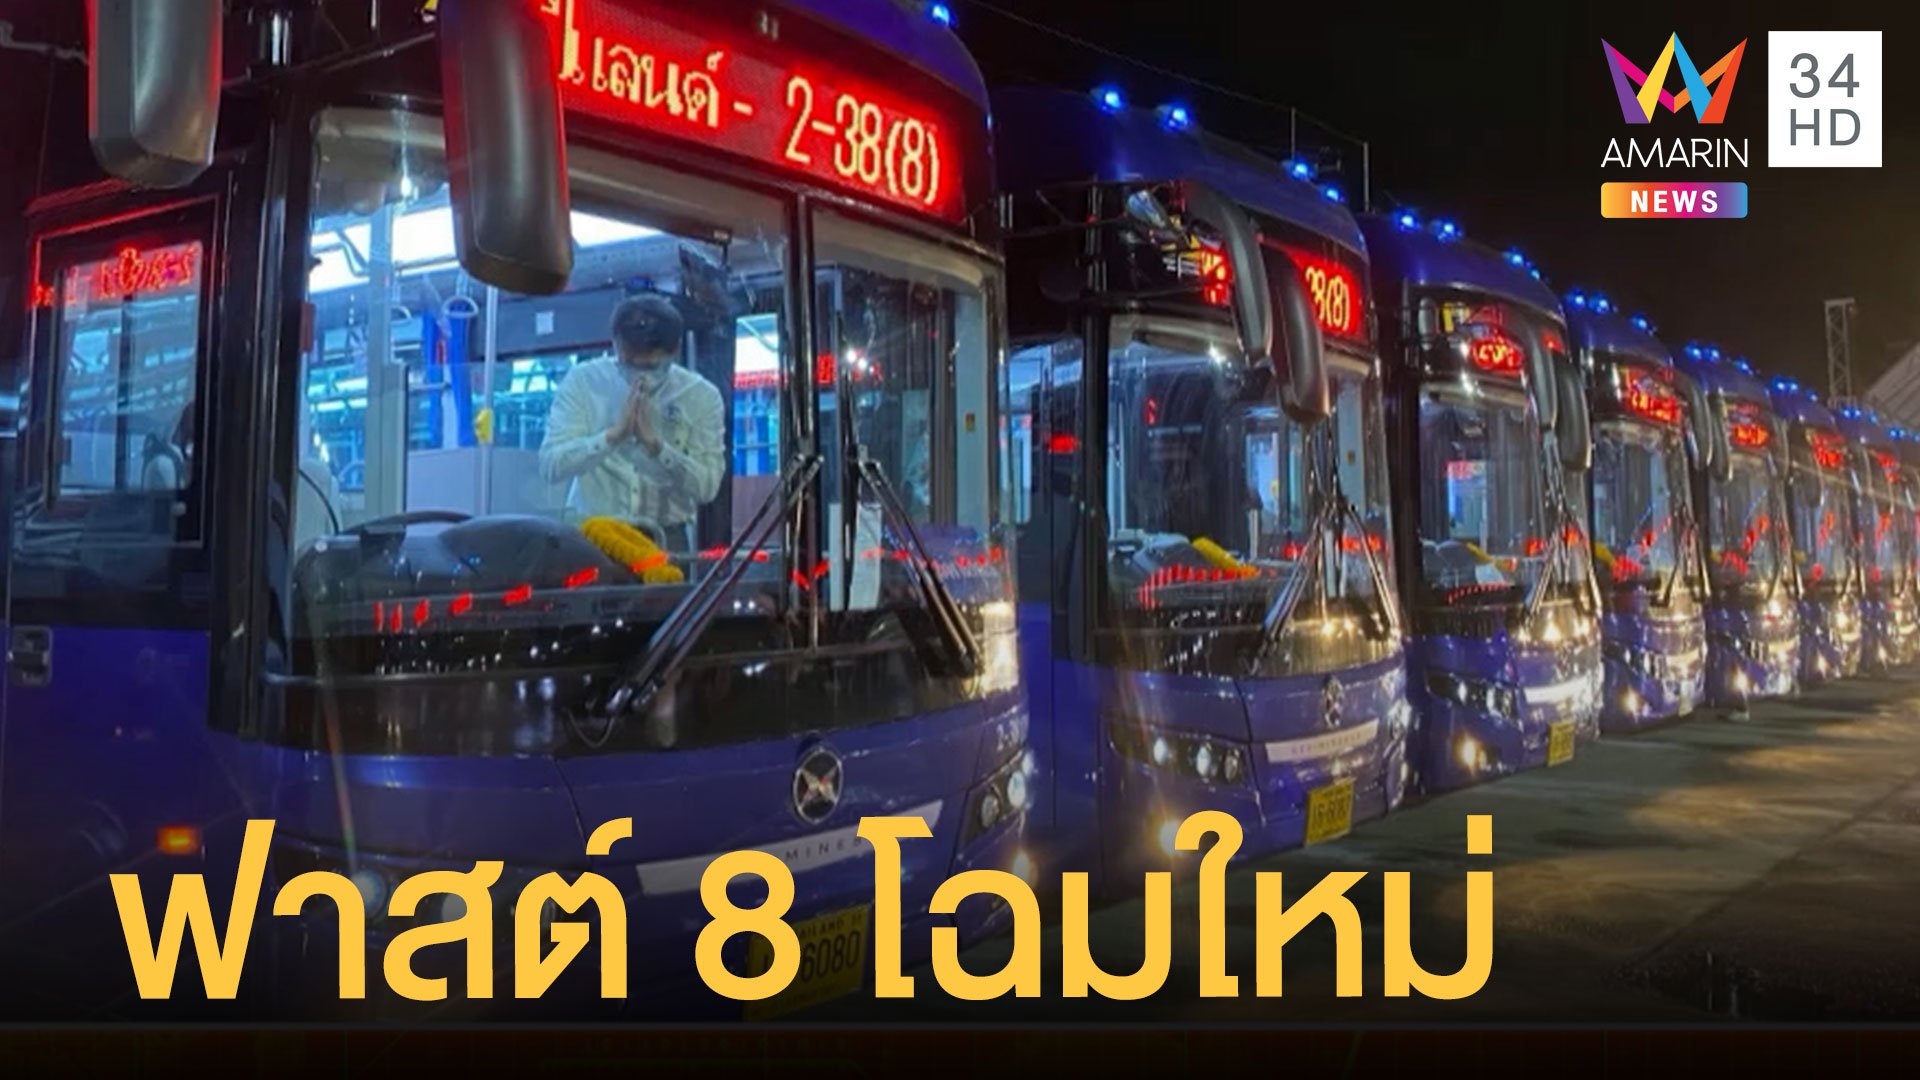 รถเมล์สาย 8 ไฉไลกว่าเดิม รถไฟฟ้าทั้งคันลบภาพฟาสต์ 8 ในตำนาน | ข่าวอรุณอมรินทร์ | 21 ส.ค. 65 | AMARIN TVHD34